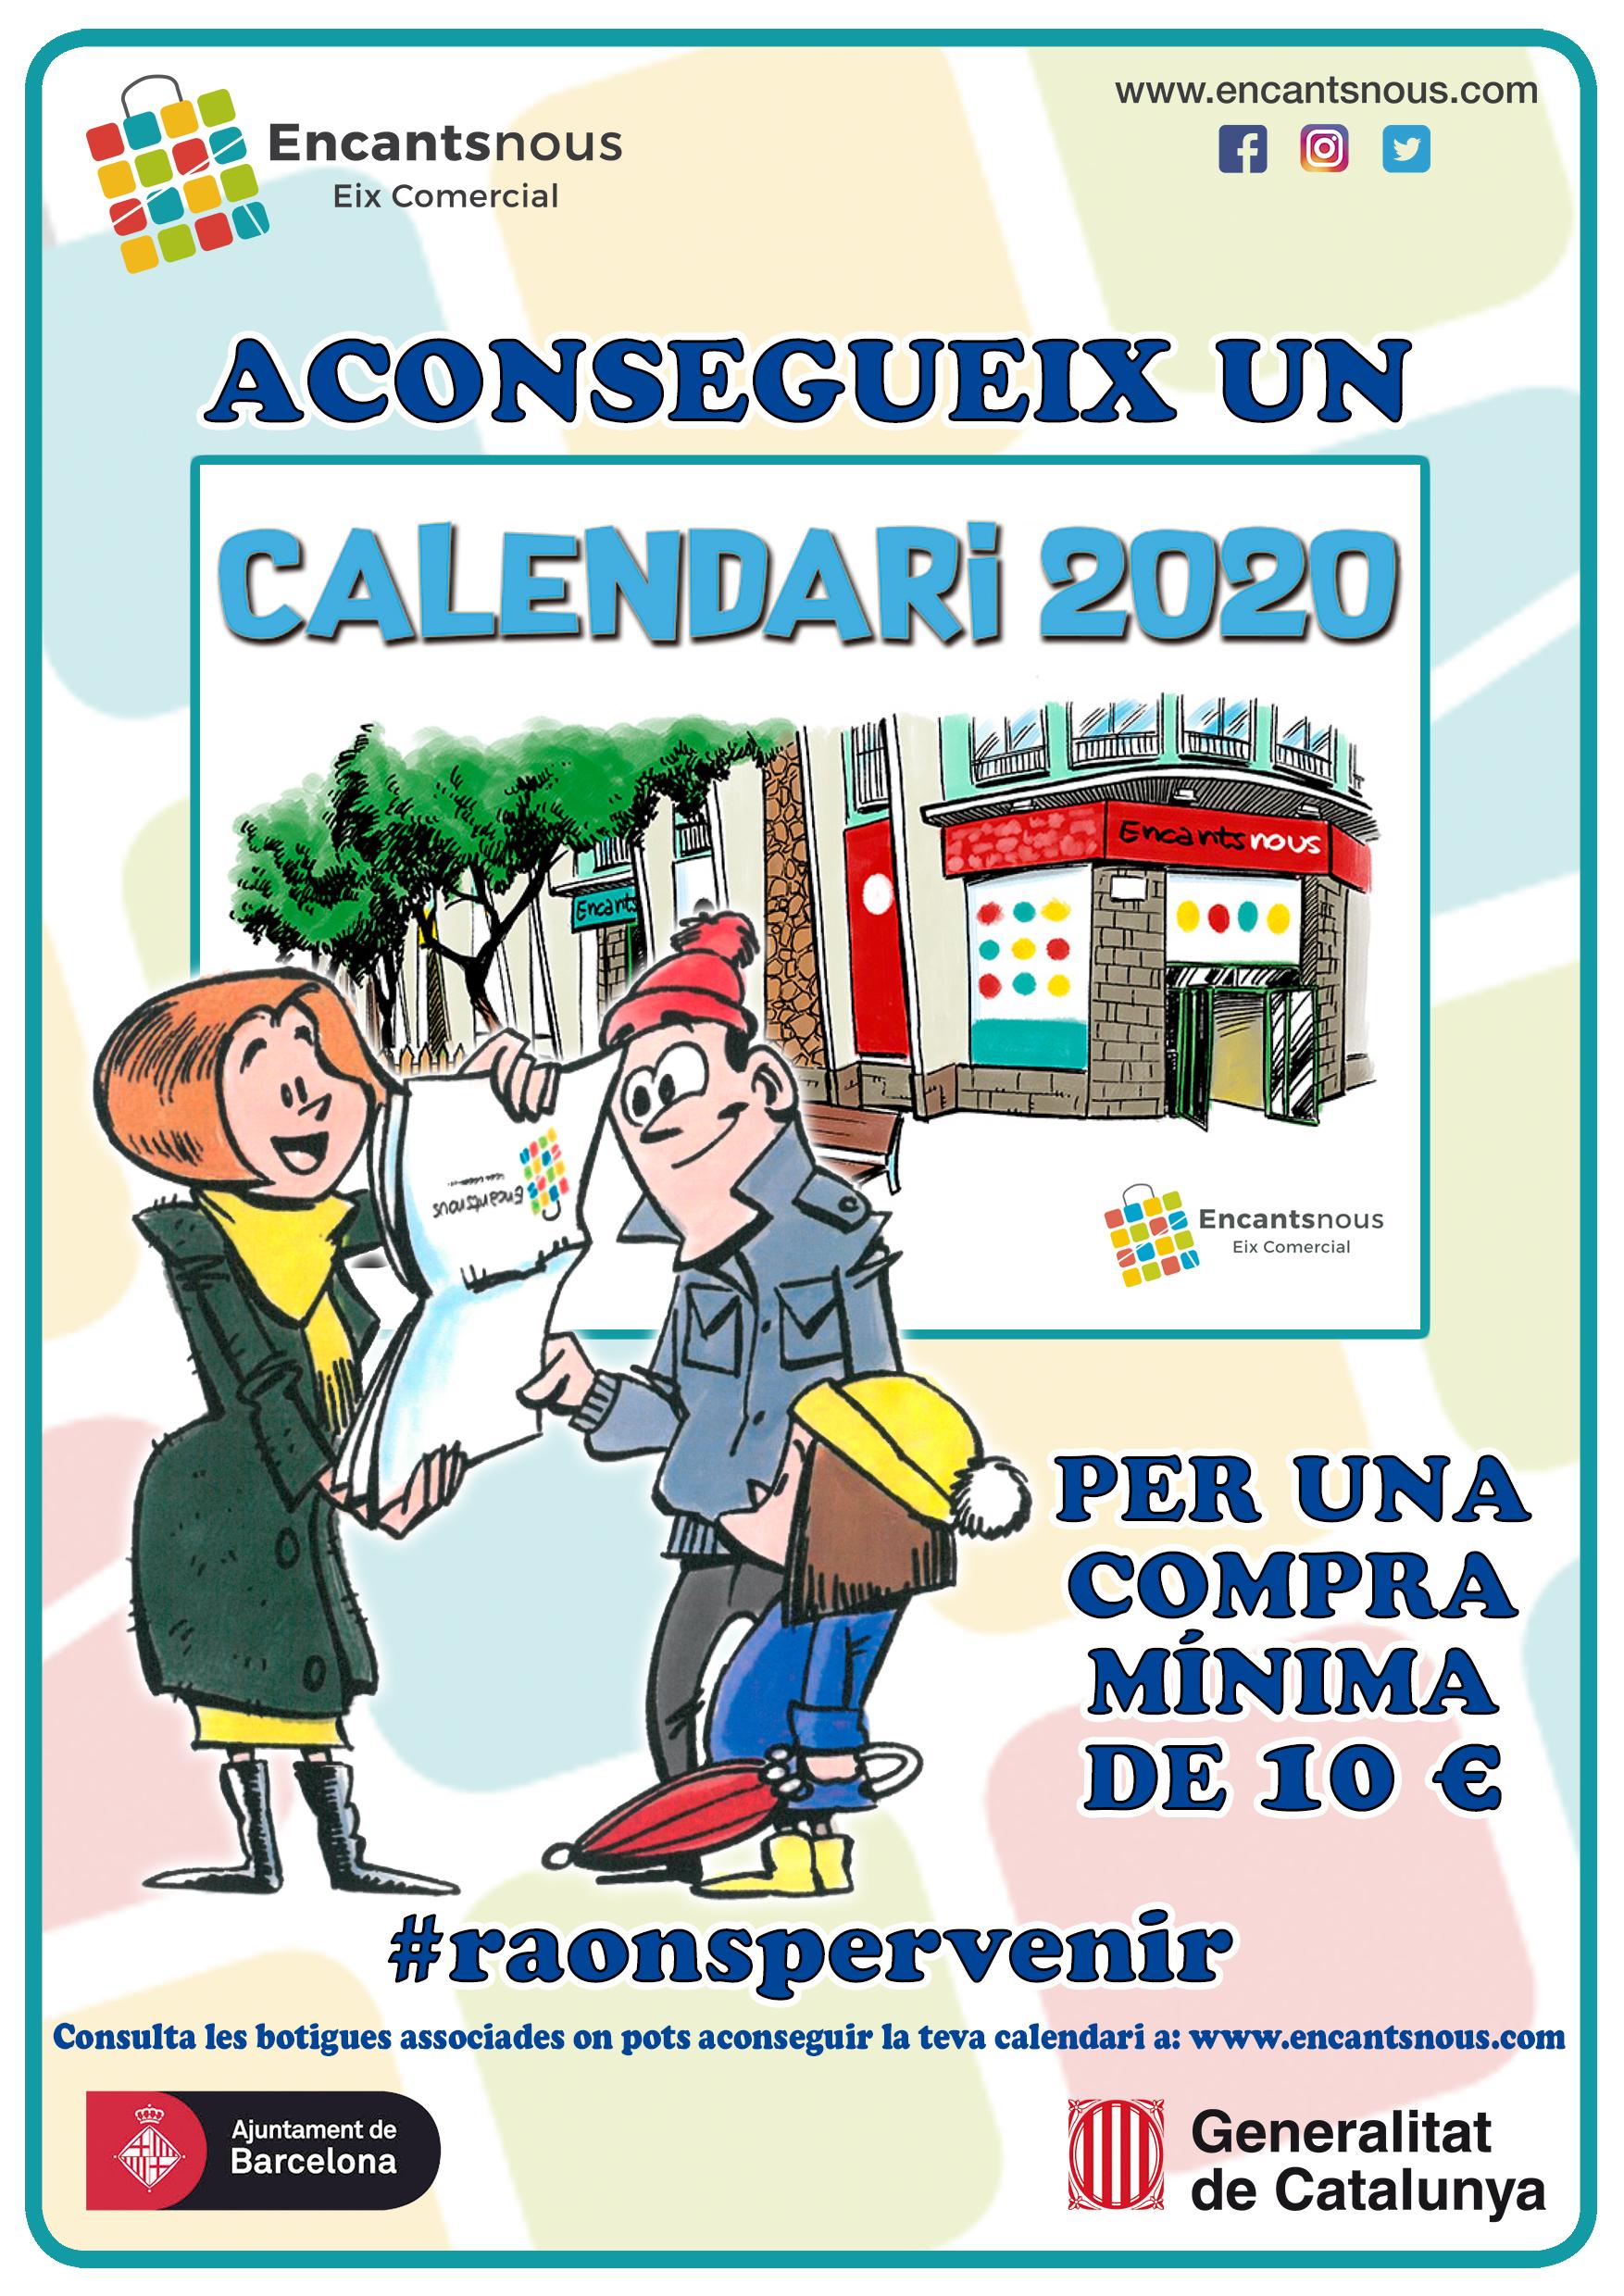 Calendario 2020 Encantsnous Eix Comercial